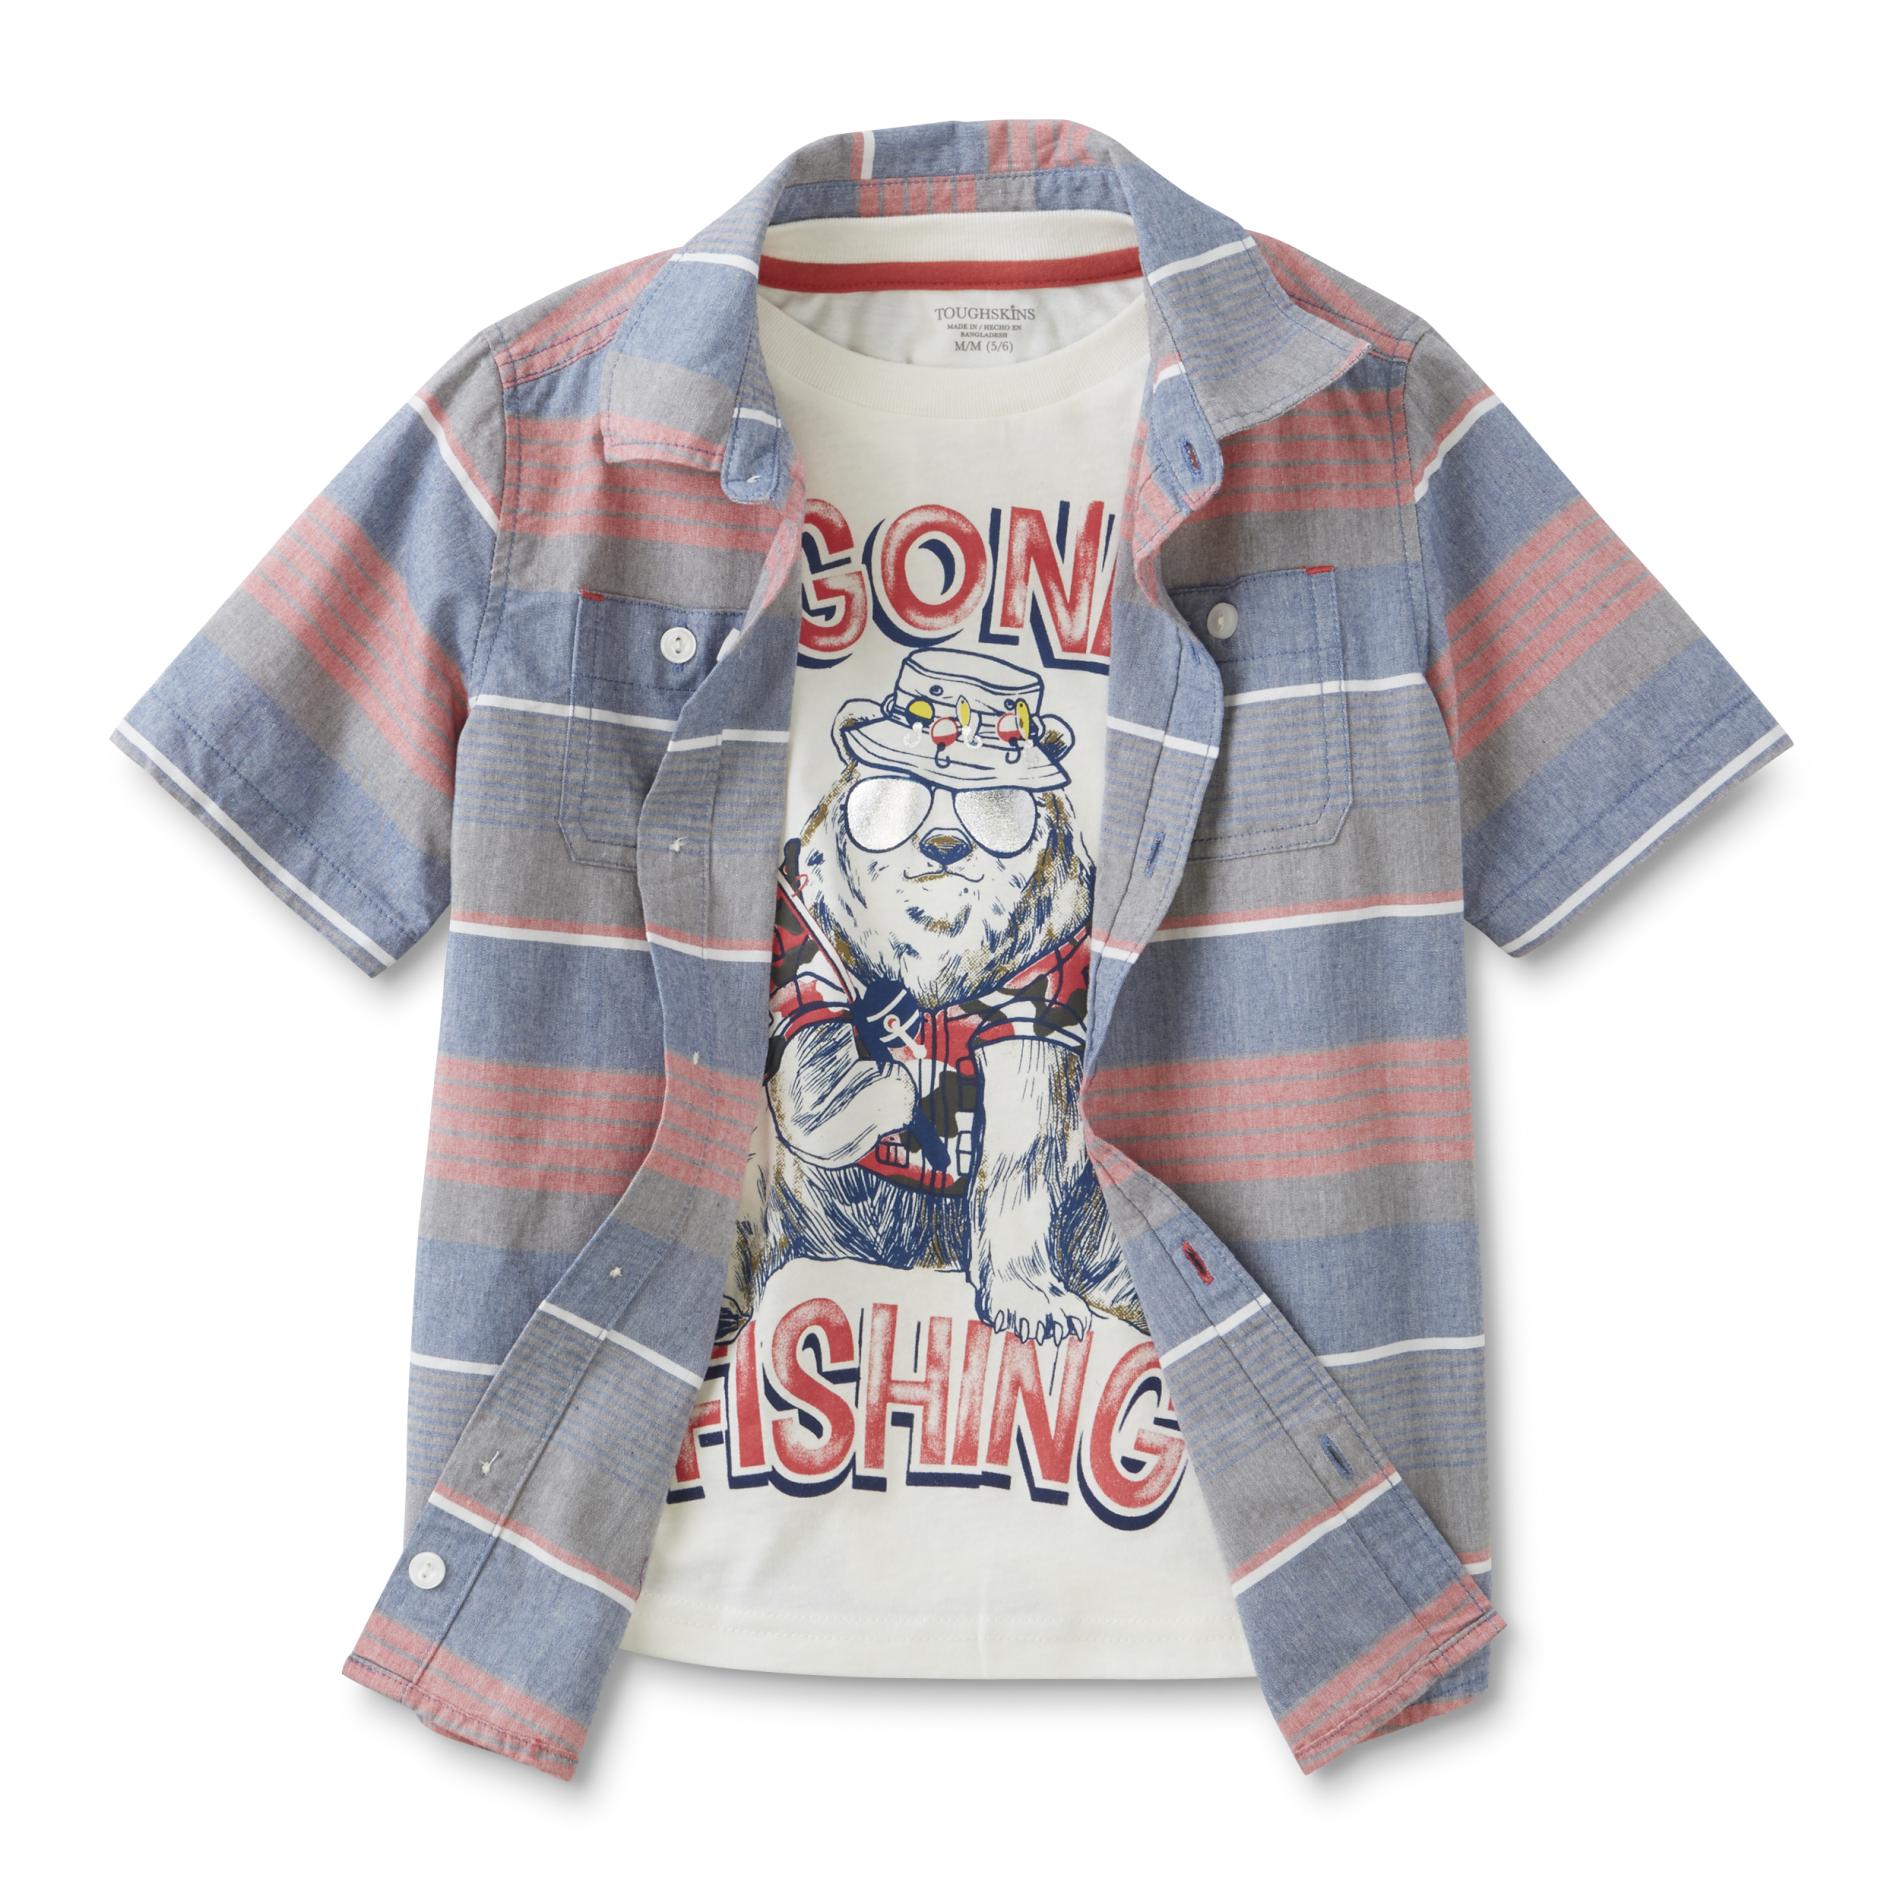 Toughskins Boy's Button-Front Shirt & T-Shirt - Striped & Fishing